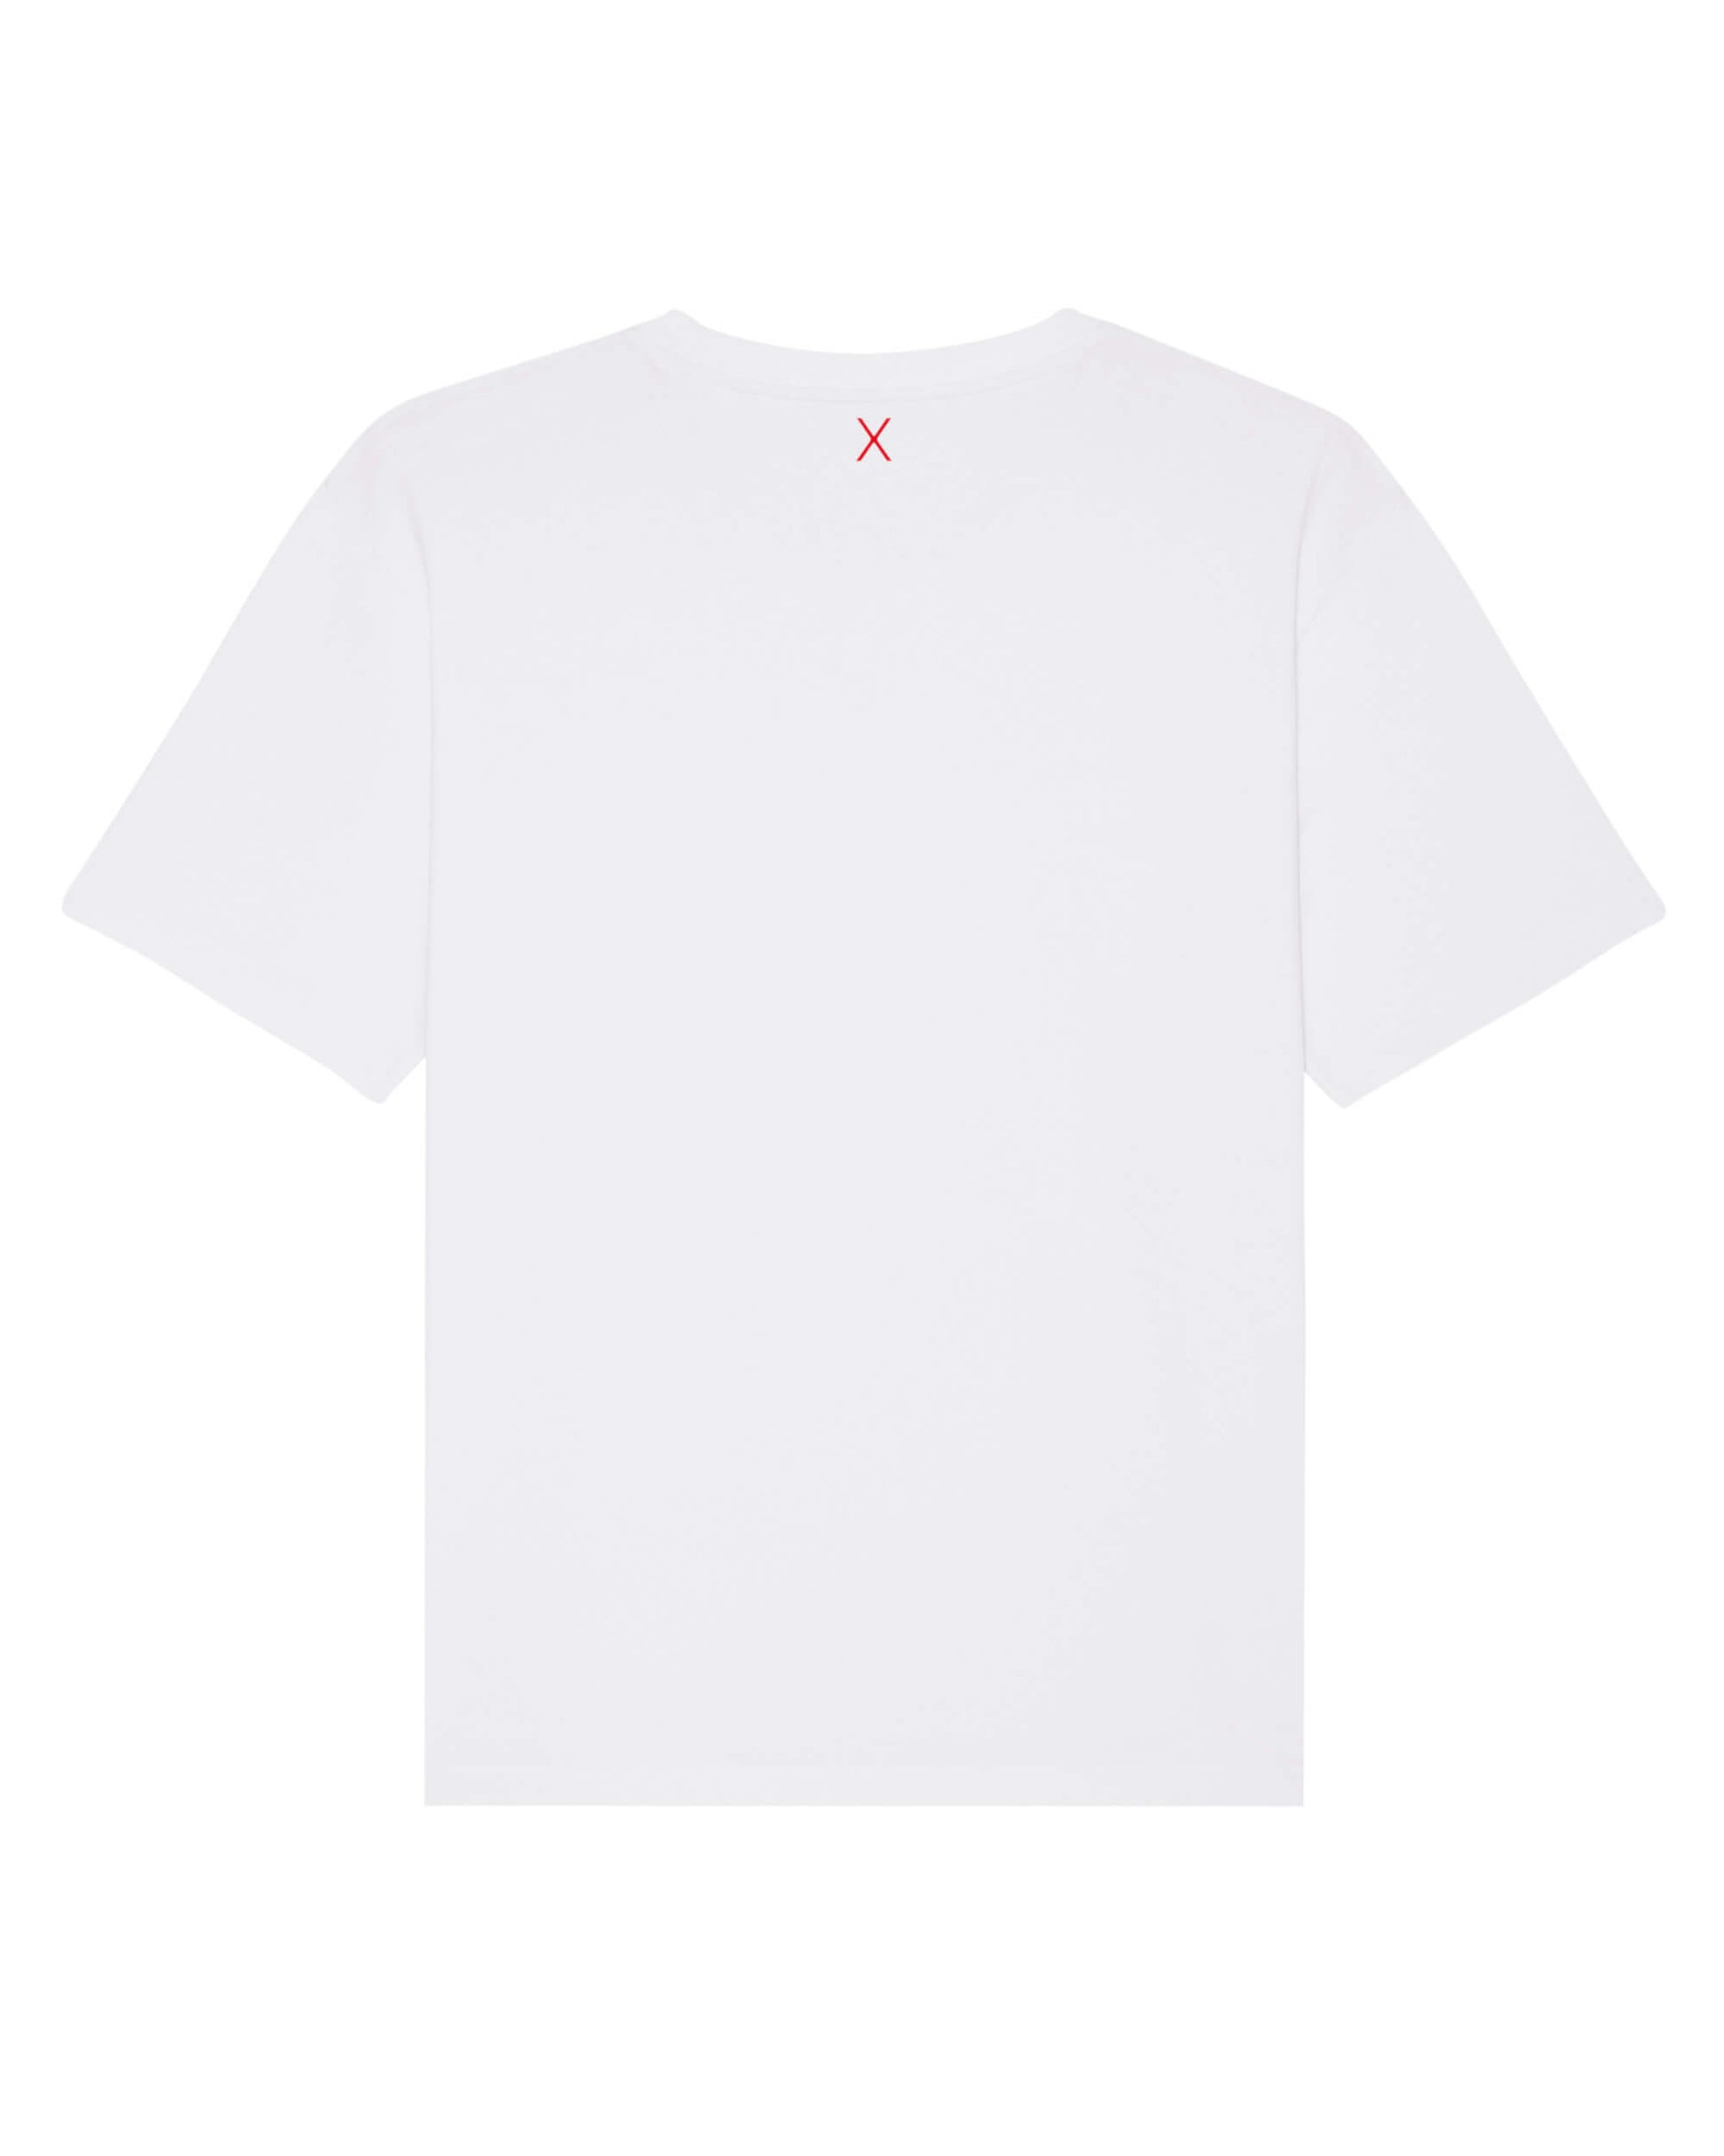 Produktbild eines weißen T-Shirts (Rückseite). Mittig, direkt unter dem Nackensaum ist das ikonische Extra "X" in rot.